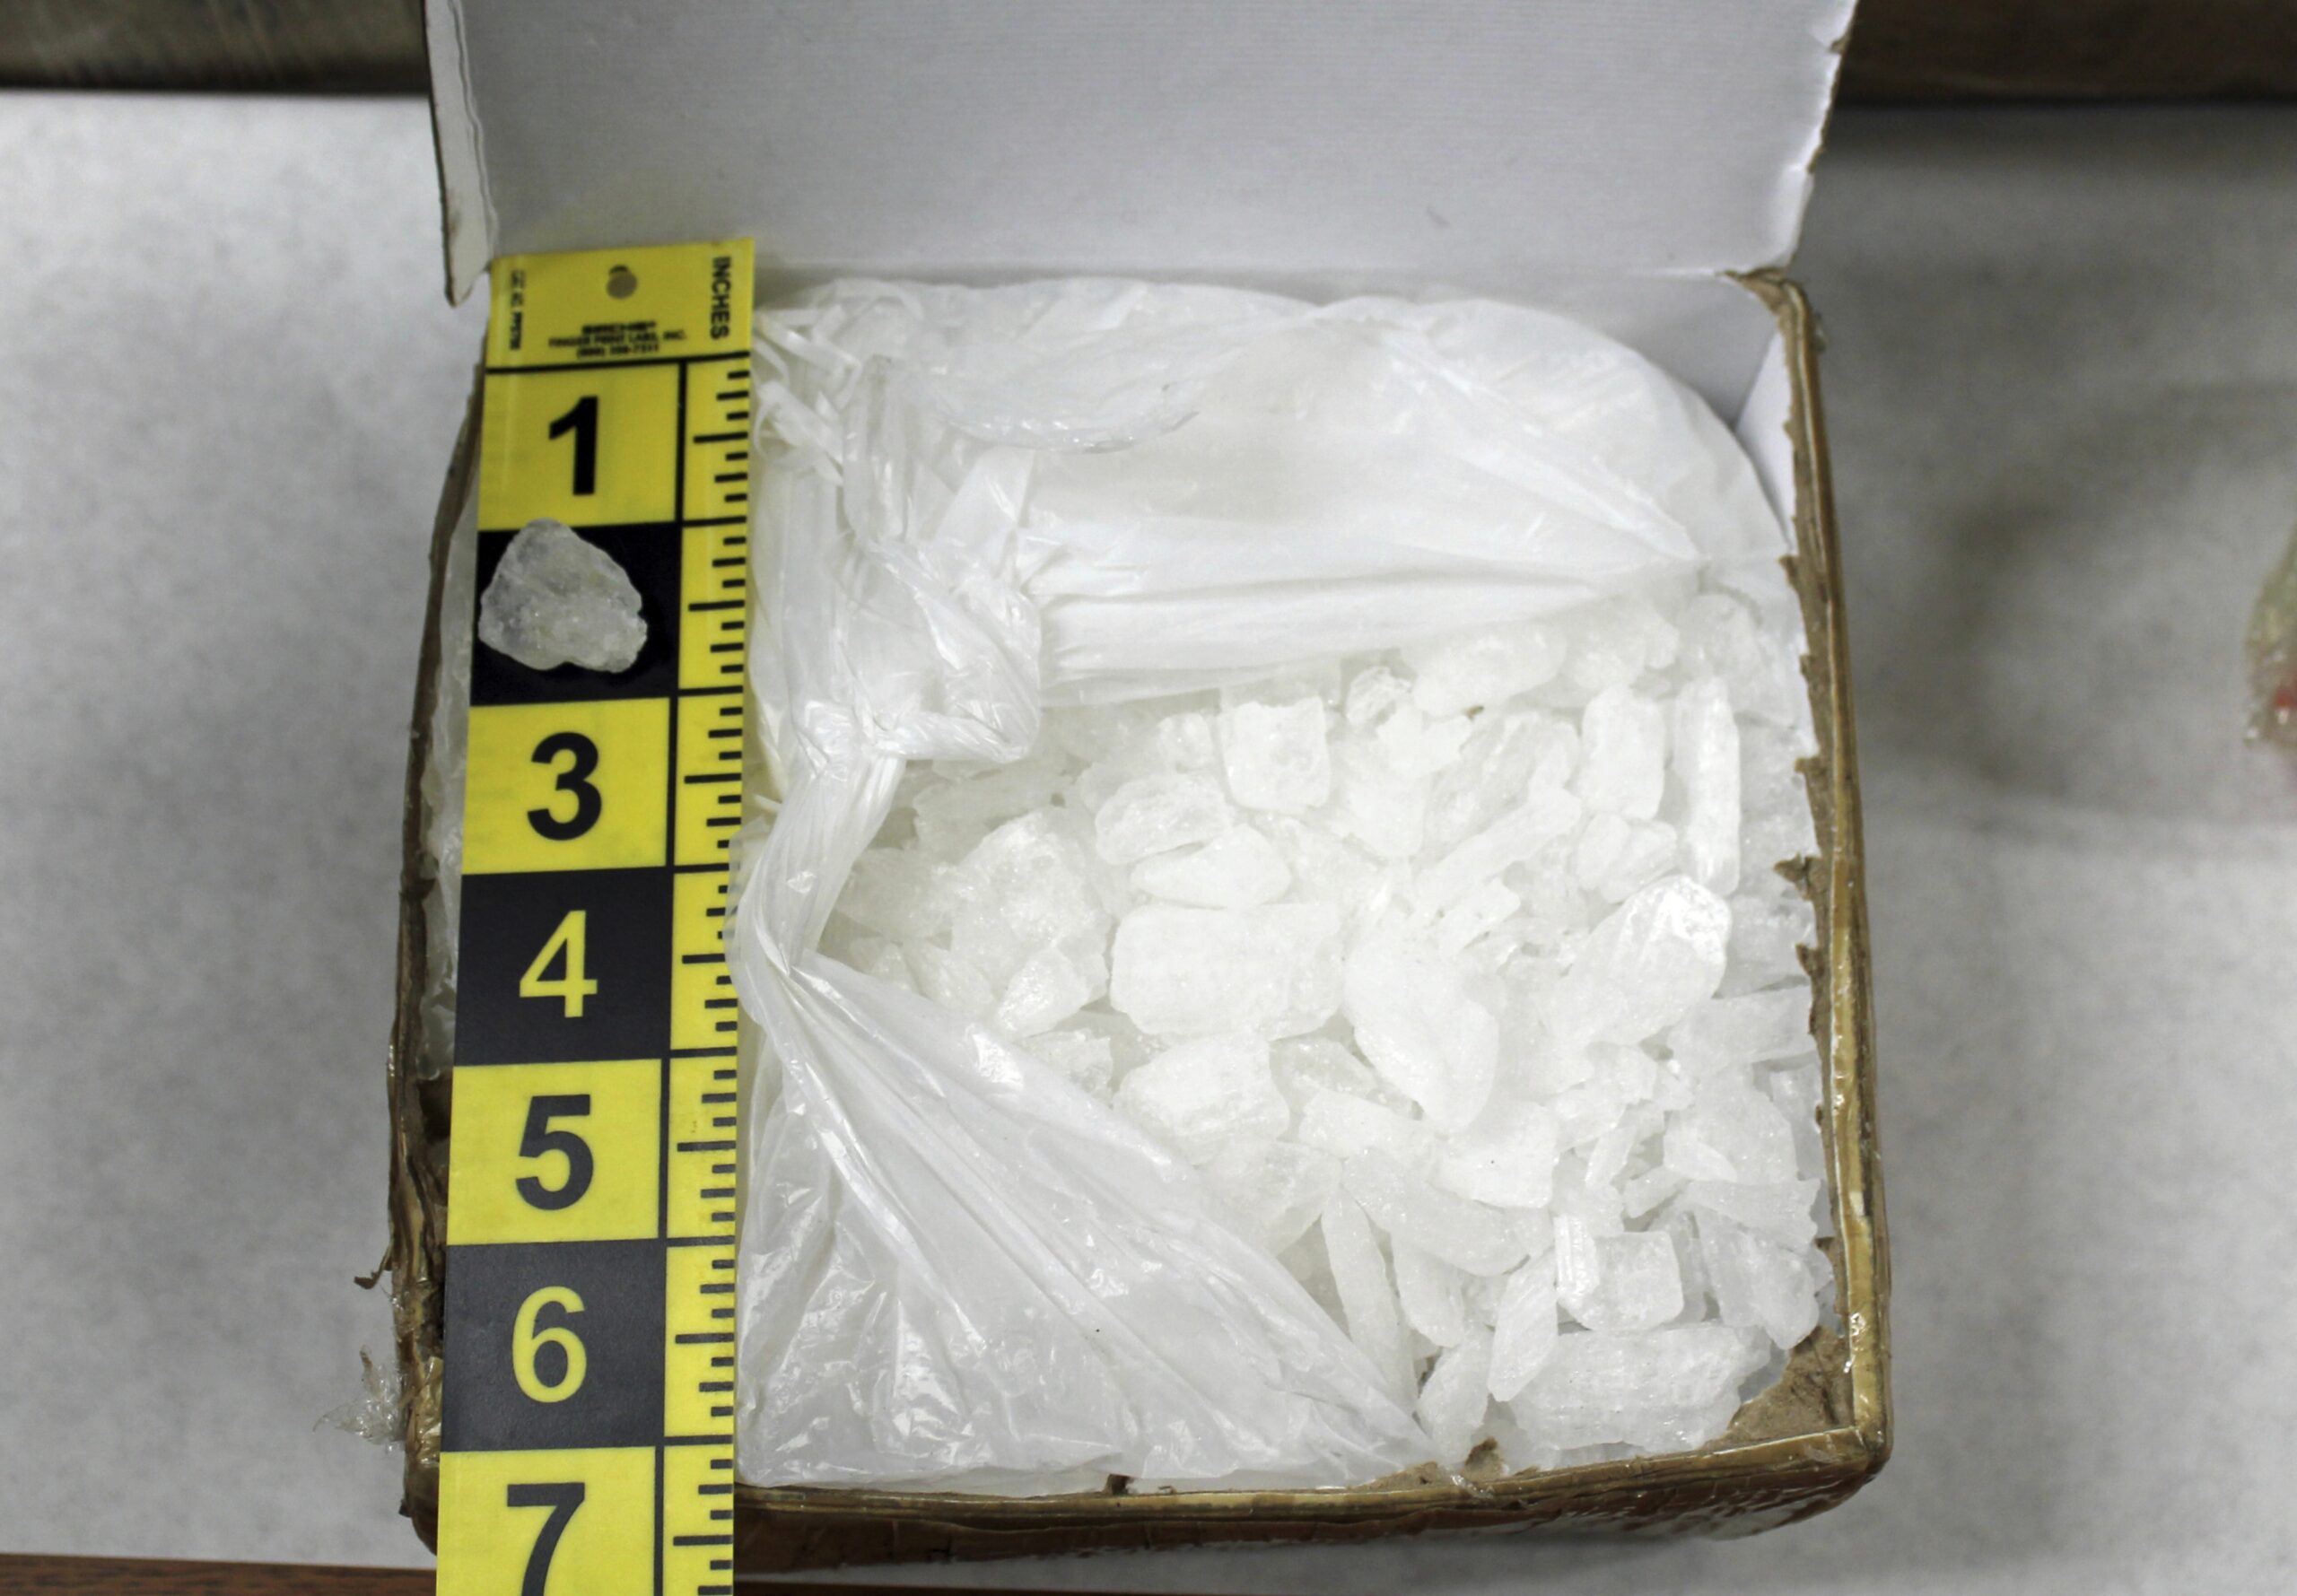 A box containing methamphetamine